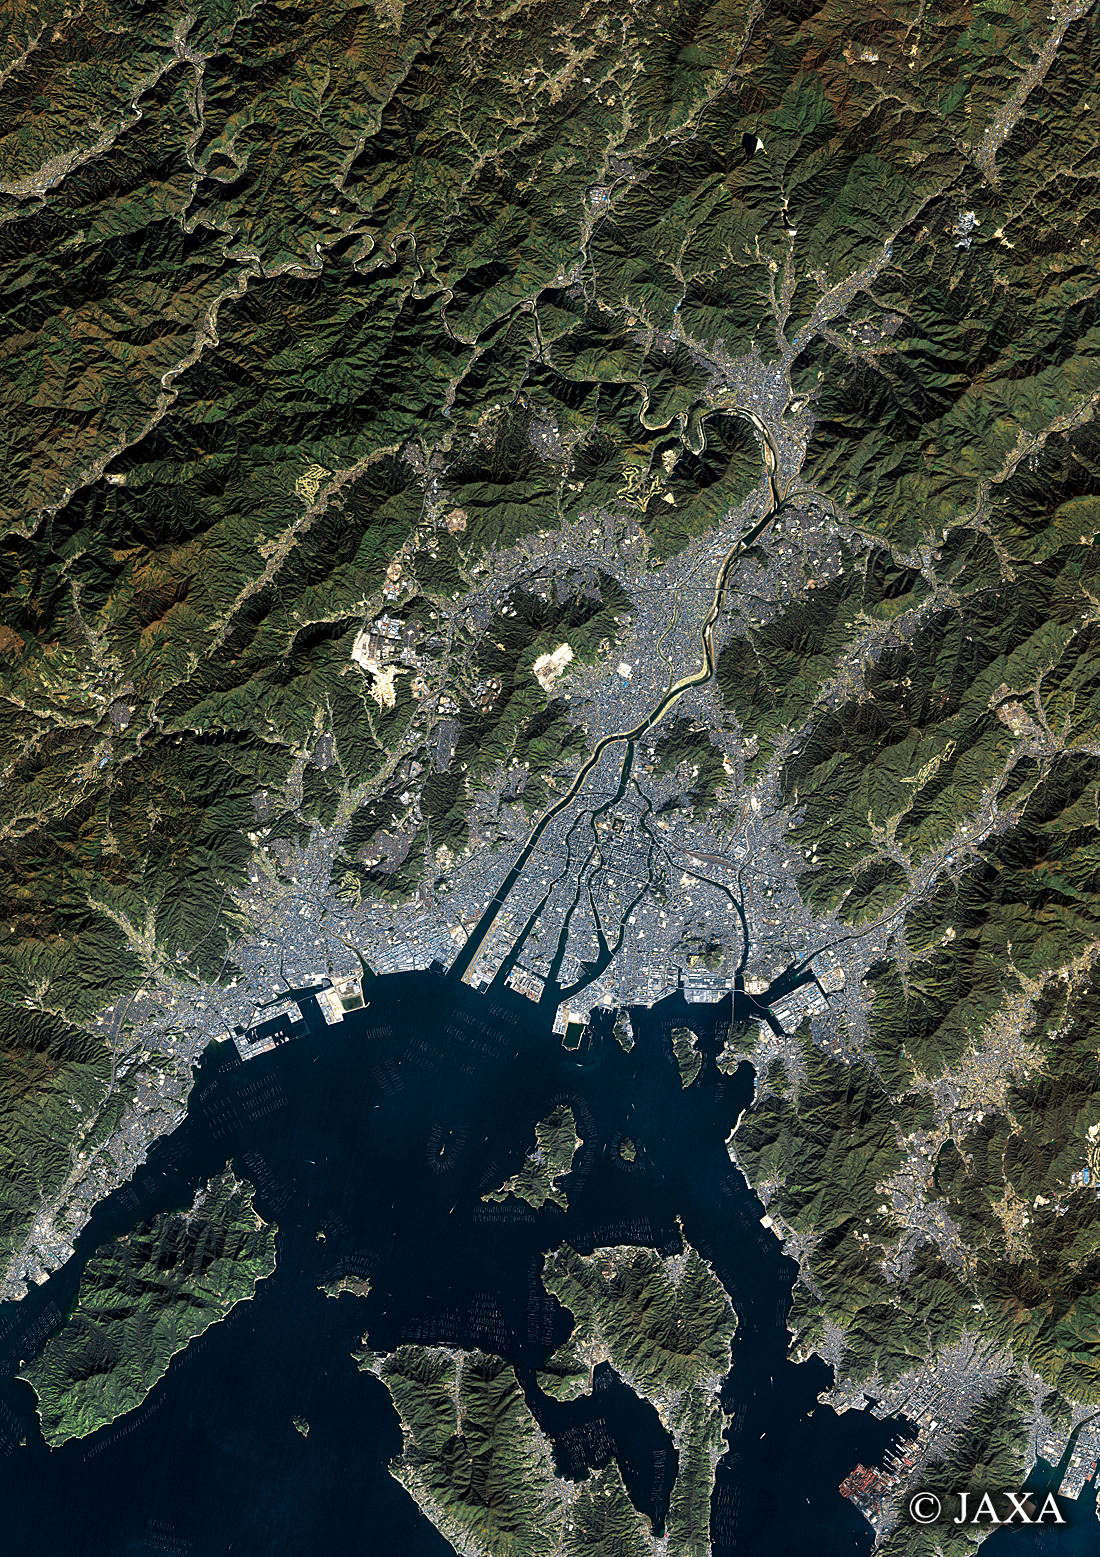 だいちから見た日本の都市 広島市周辺:衛星画像